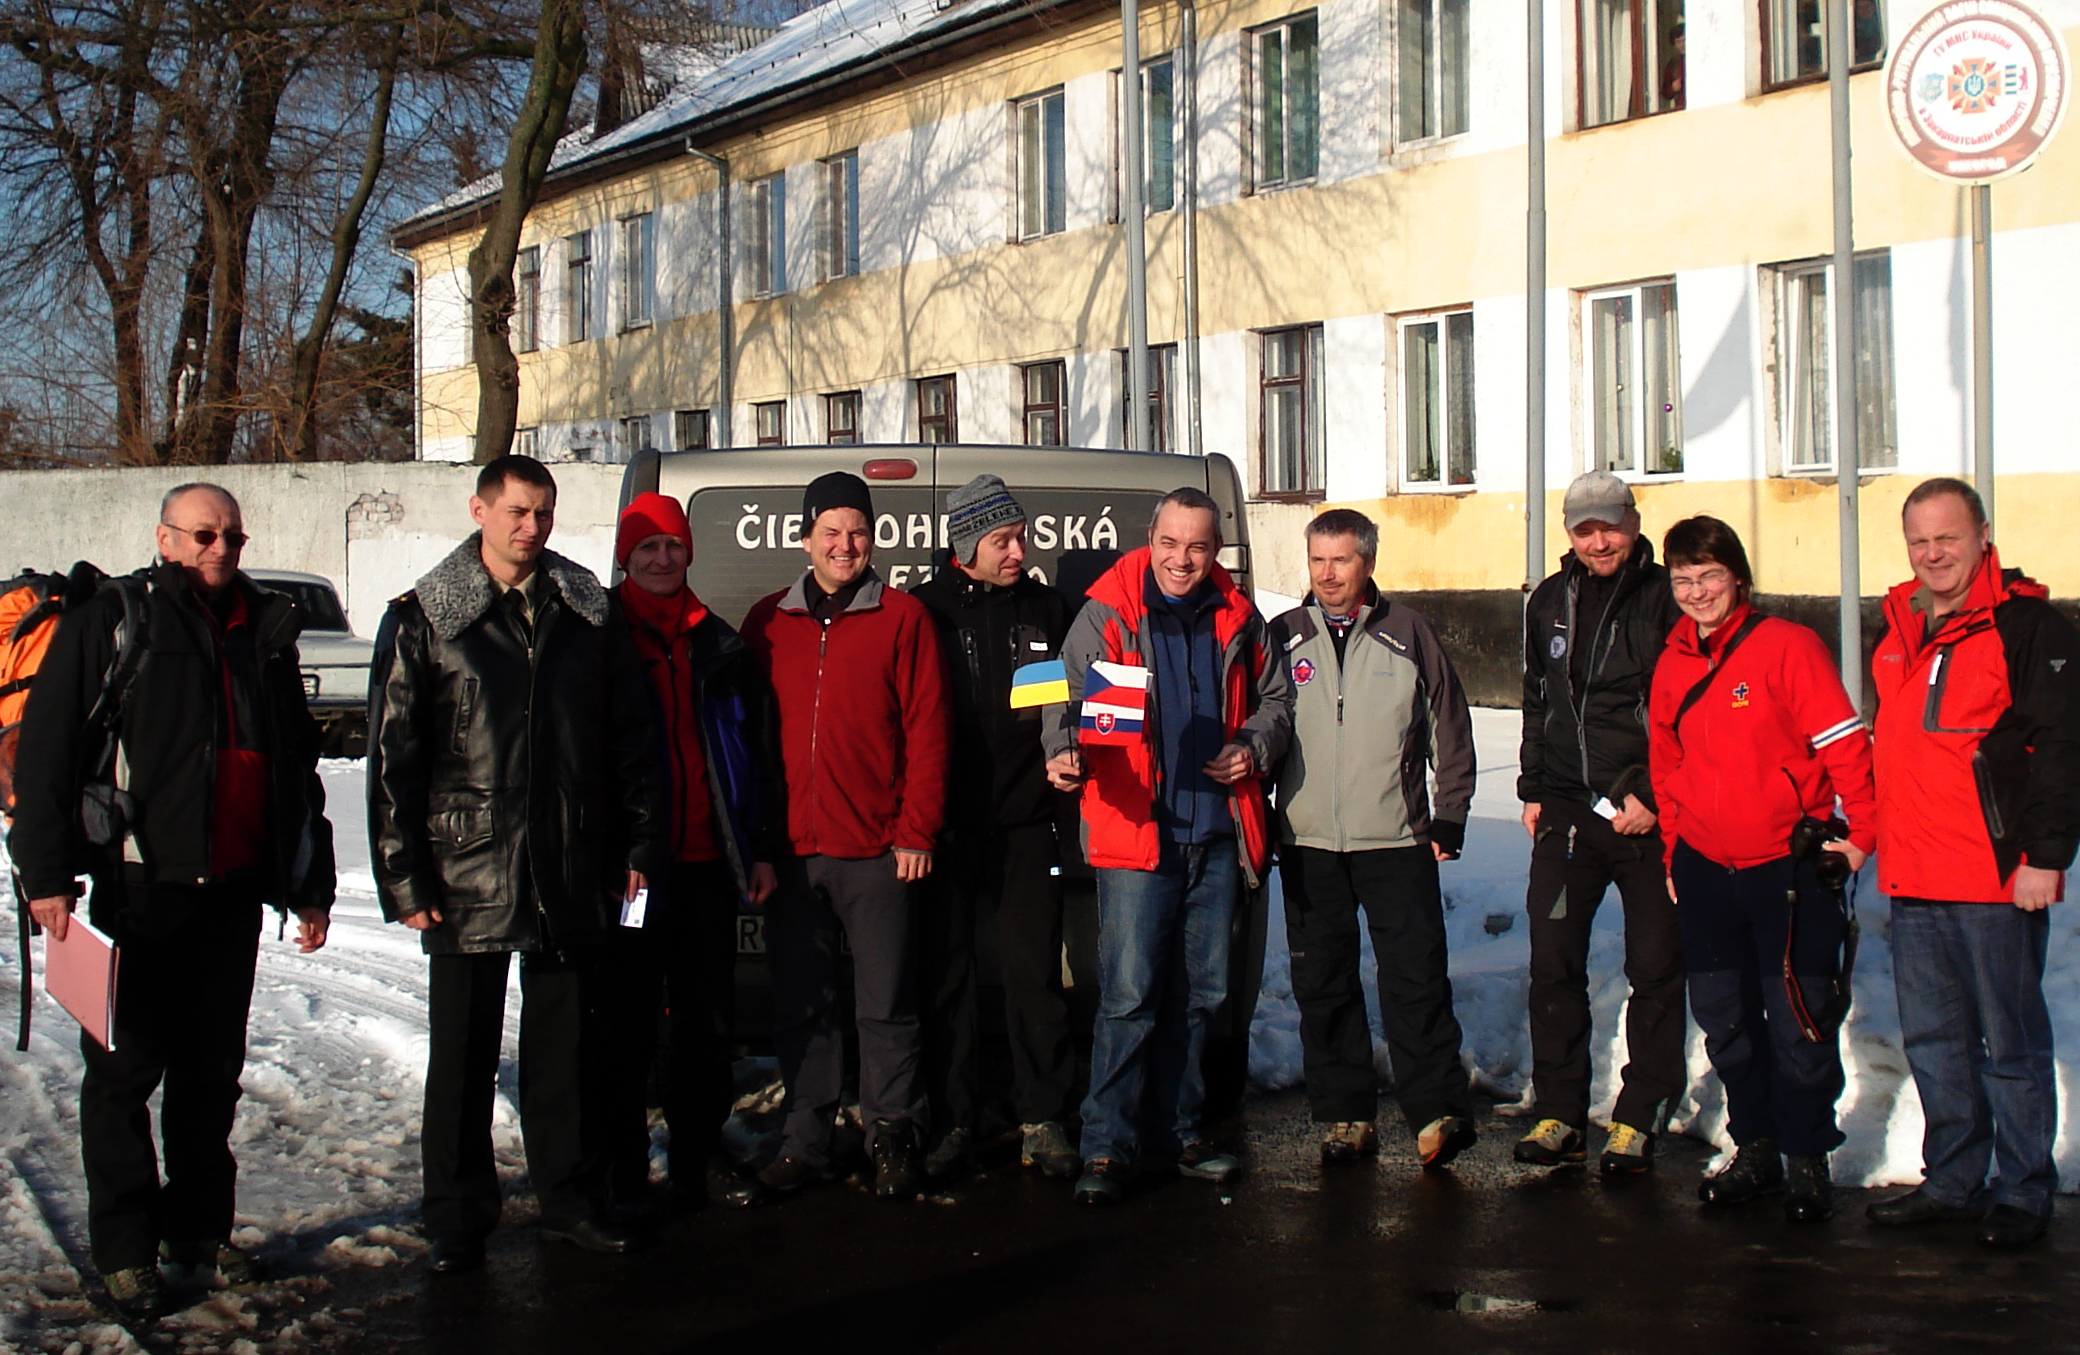 Закарпатські рятувальники навчатимуться з колегами з Польщі, Словаччини та Чехії
 